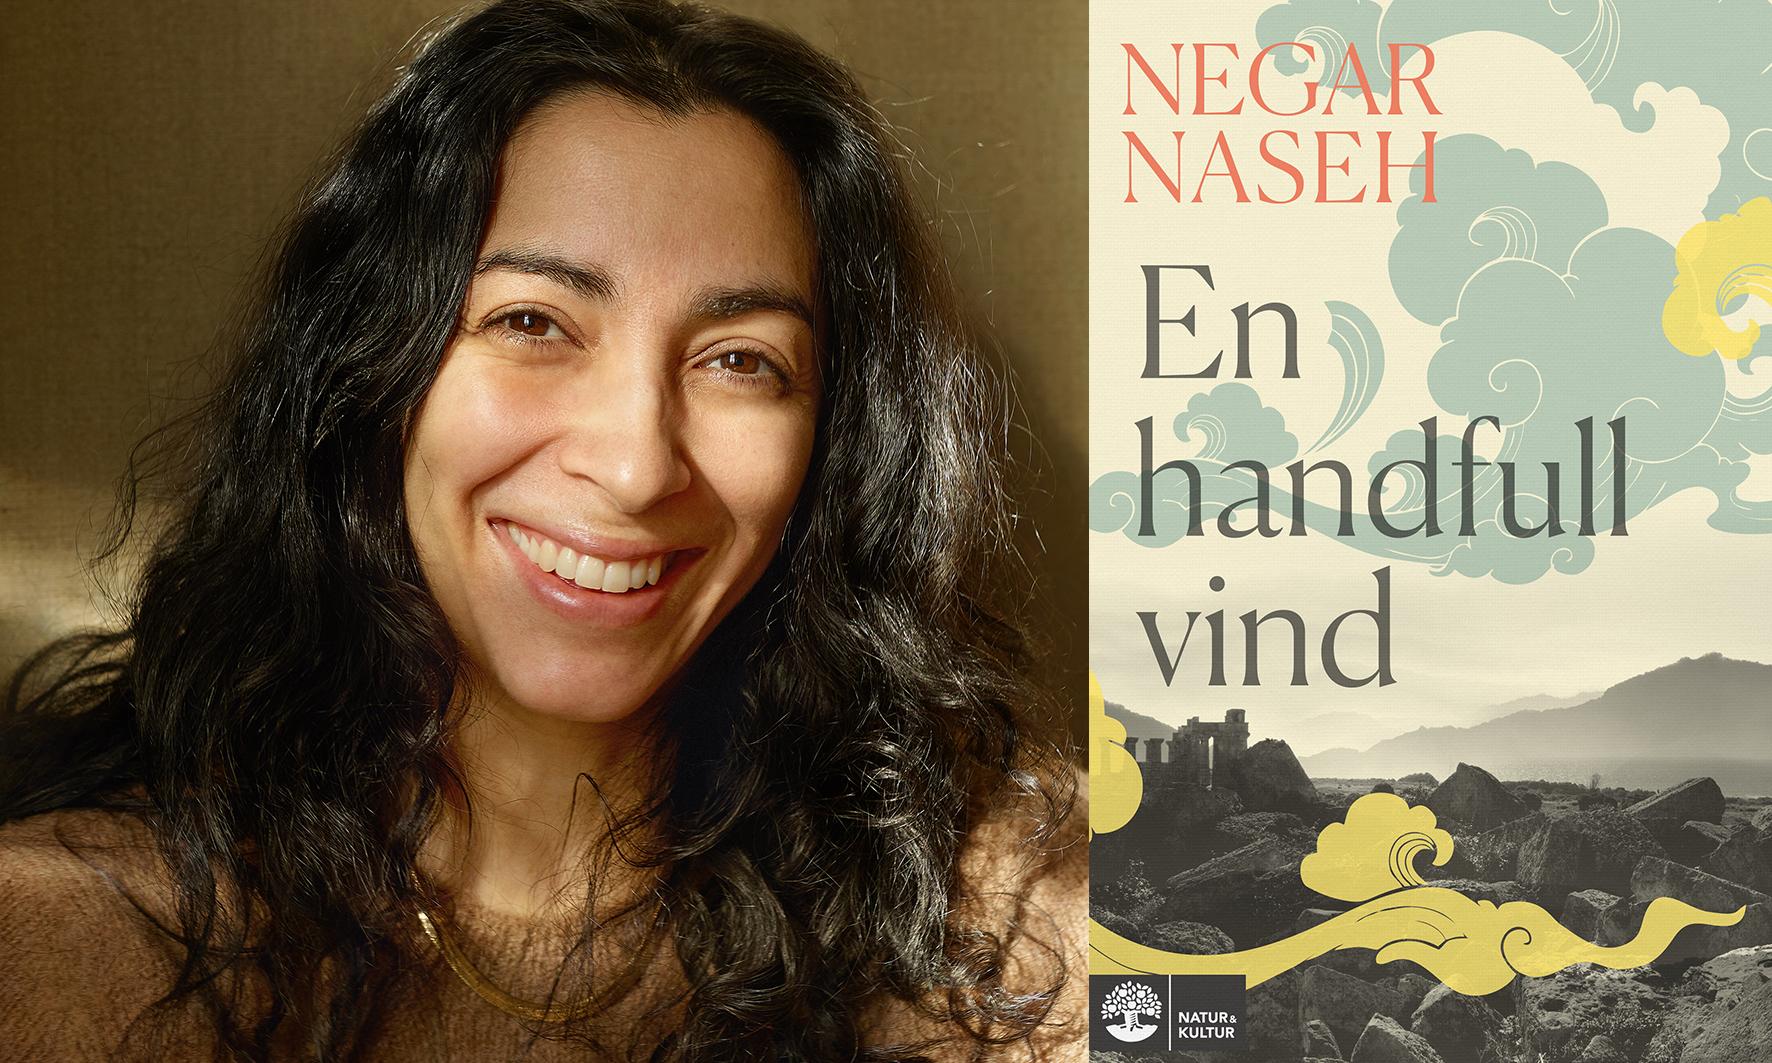 Negar Naseh (född 1984) arbetar som läkare och debuterade 2013 med ”Under all denna vinter”, en roman som nominerades till Borås Tidnings debutantpris. 2017 kom henne andra roman, ”De fördrivna”. Nu utkommer hennes tredje roman, ”En handfull vind”.